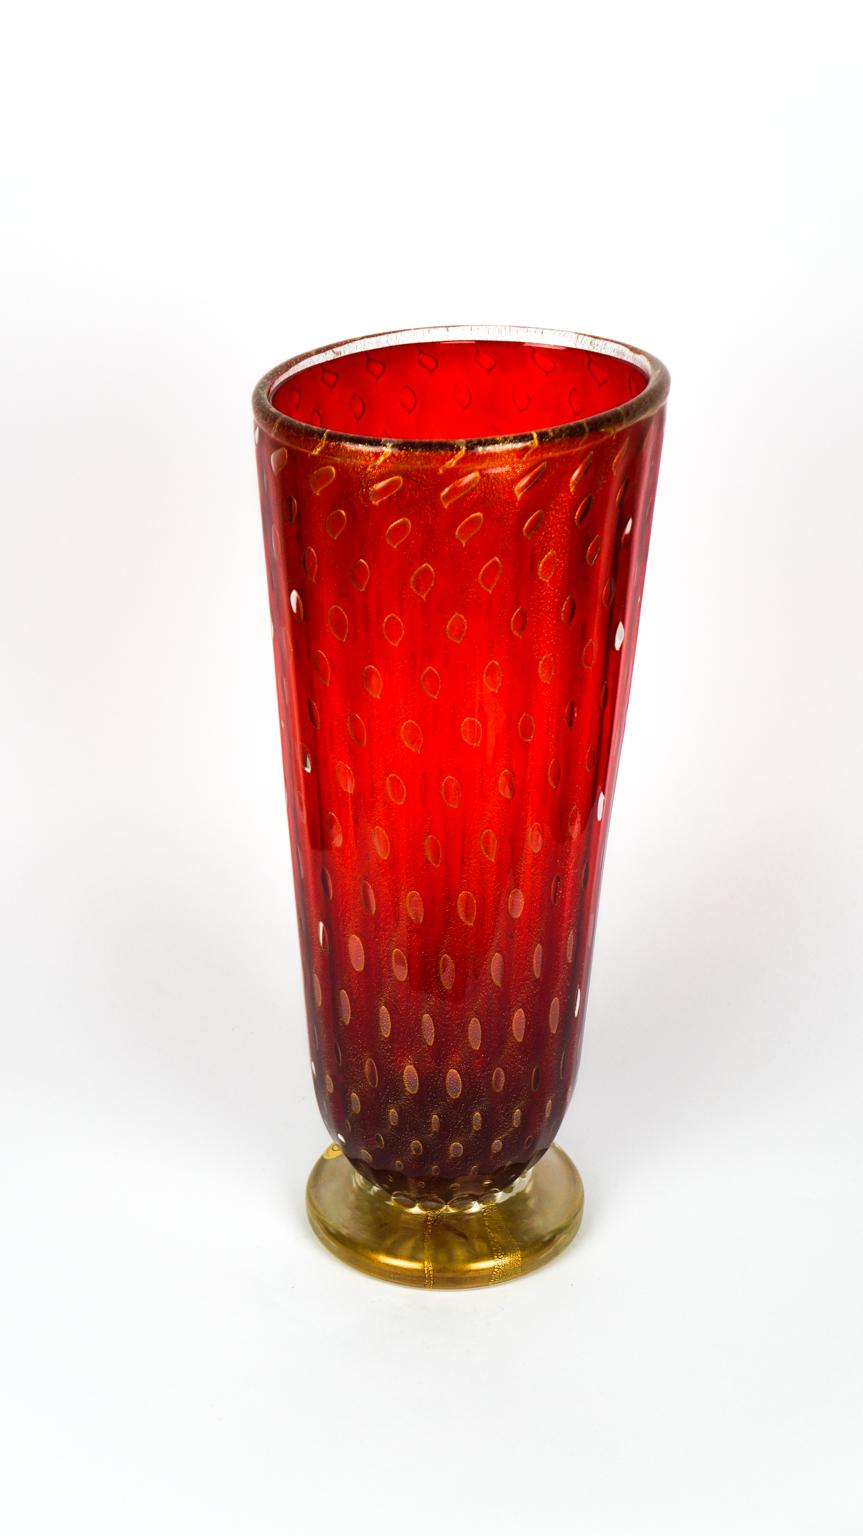 Art Deco Red Gold Design Italian Art Glass Vase by Stefano Mattiello For Sale 2